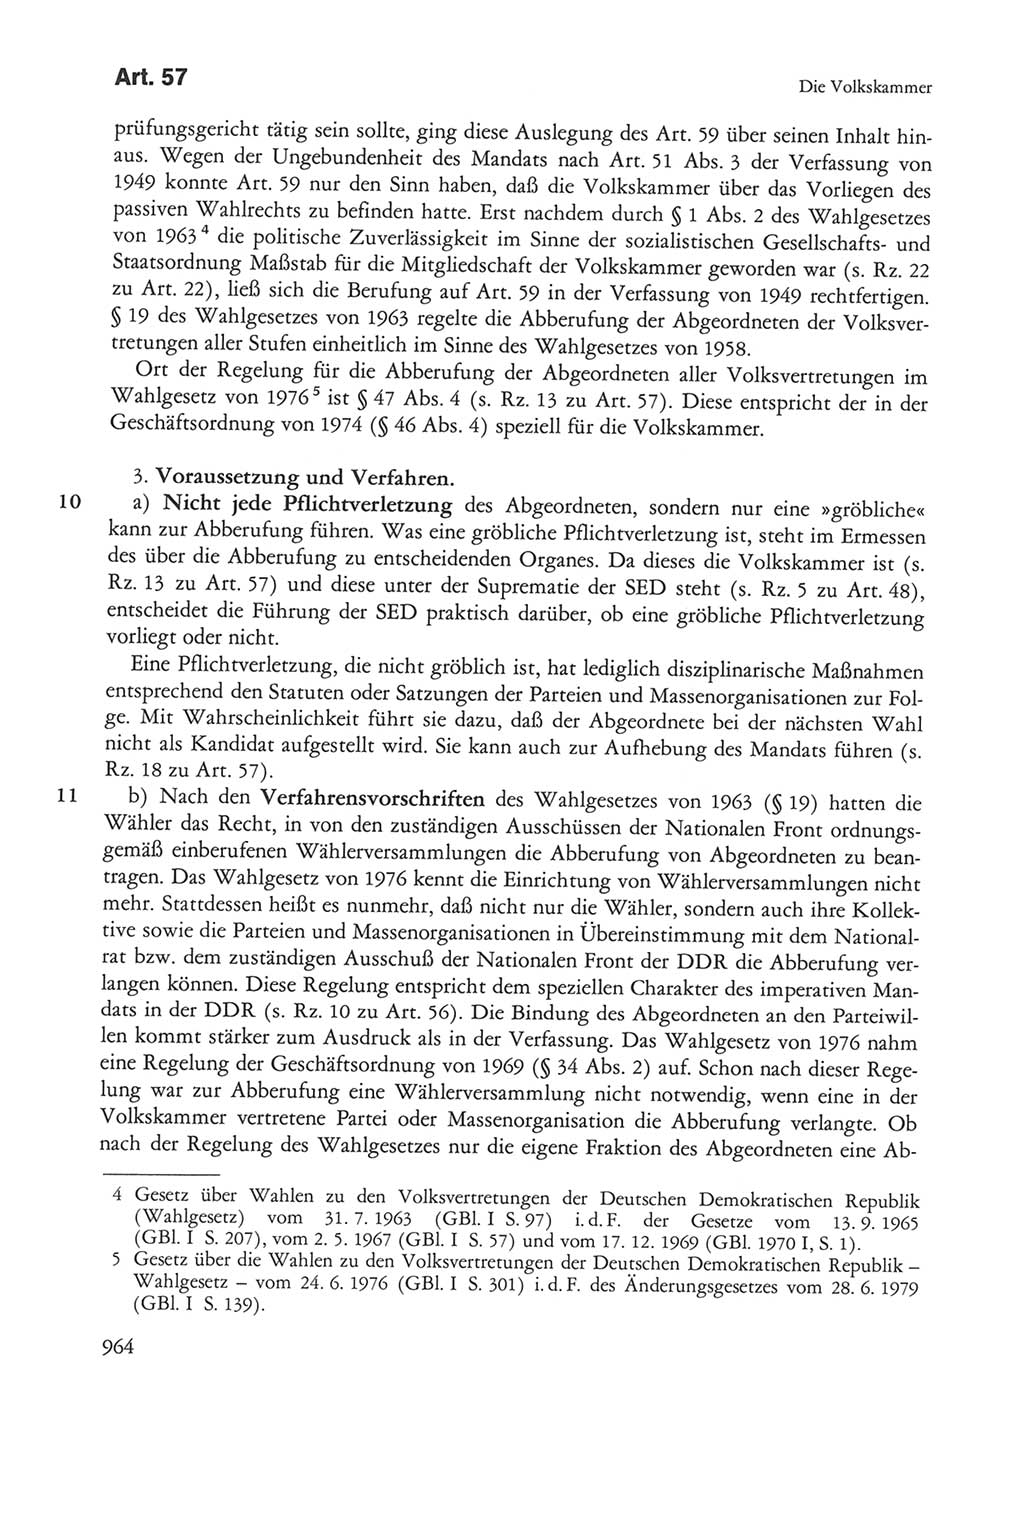 Die sozialistische Verfassung der Deutschen Demokratischen Republik (DDR), Kommentar mit einem Nachtrag 1997, Seite 964 (Soz. Verf. DDR Komm. Nachtr. 1997, S. 964)